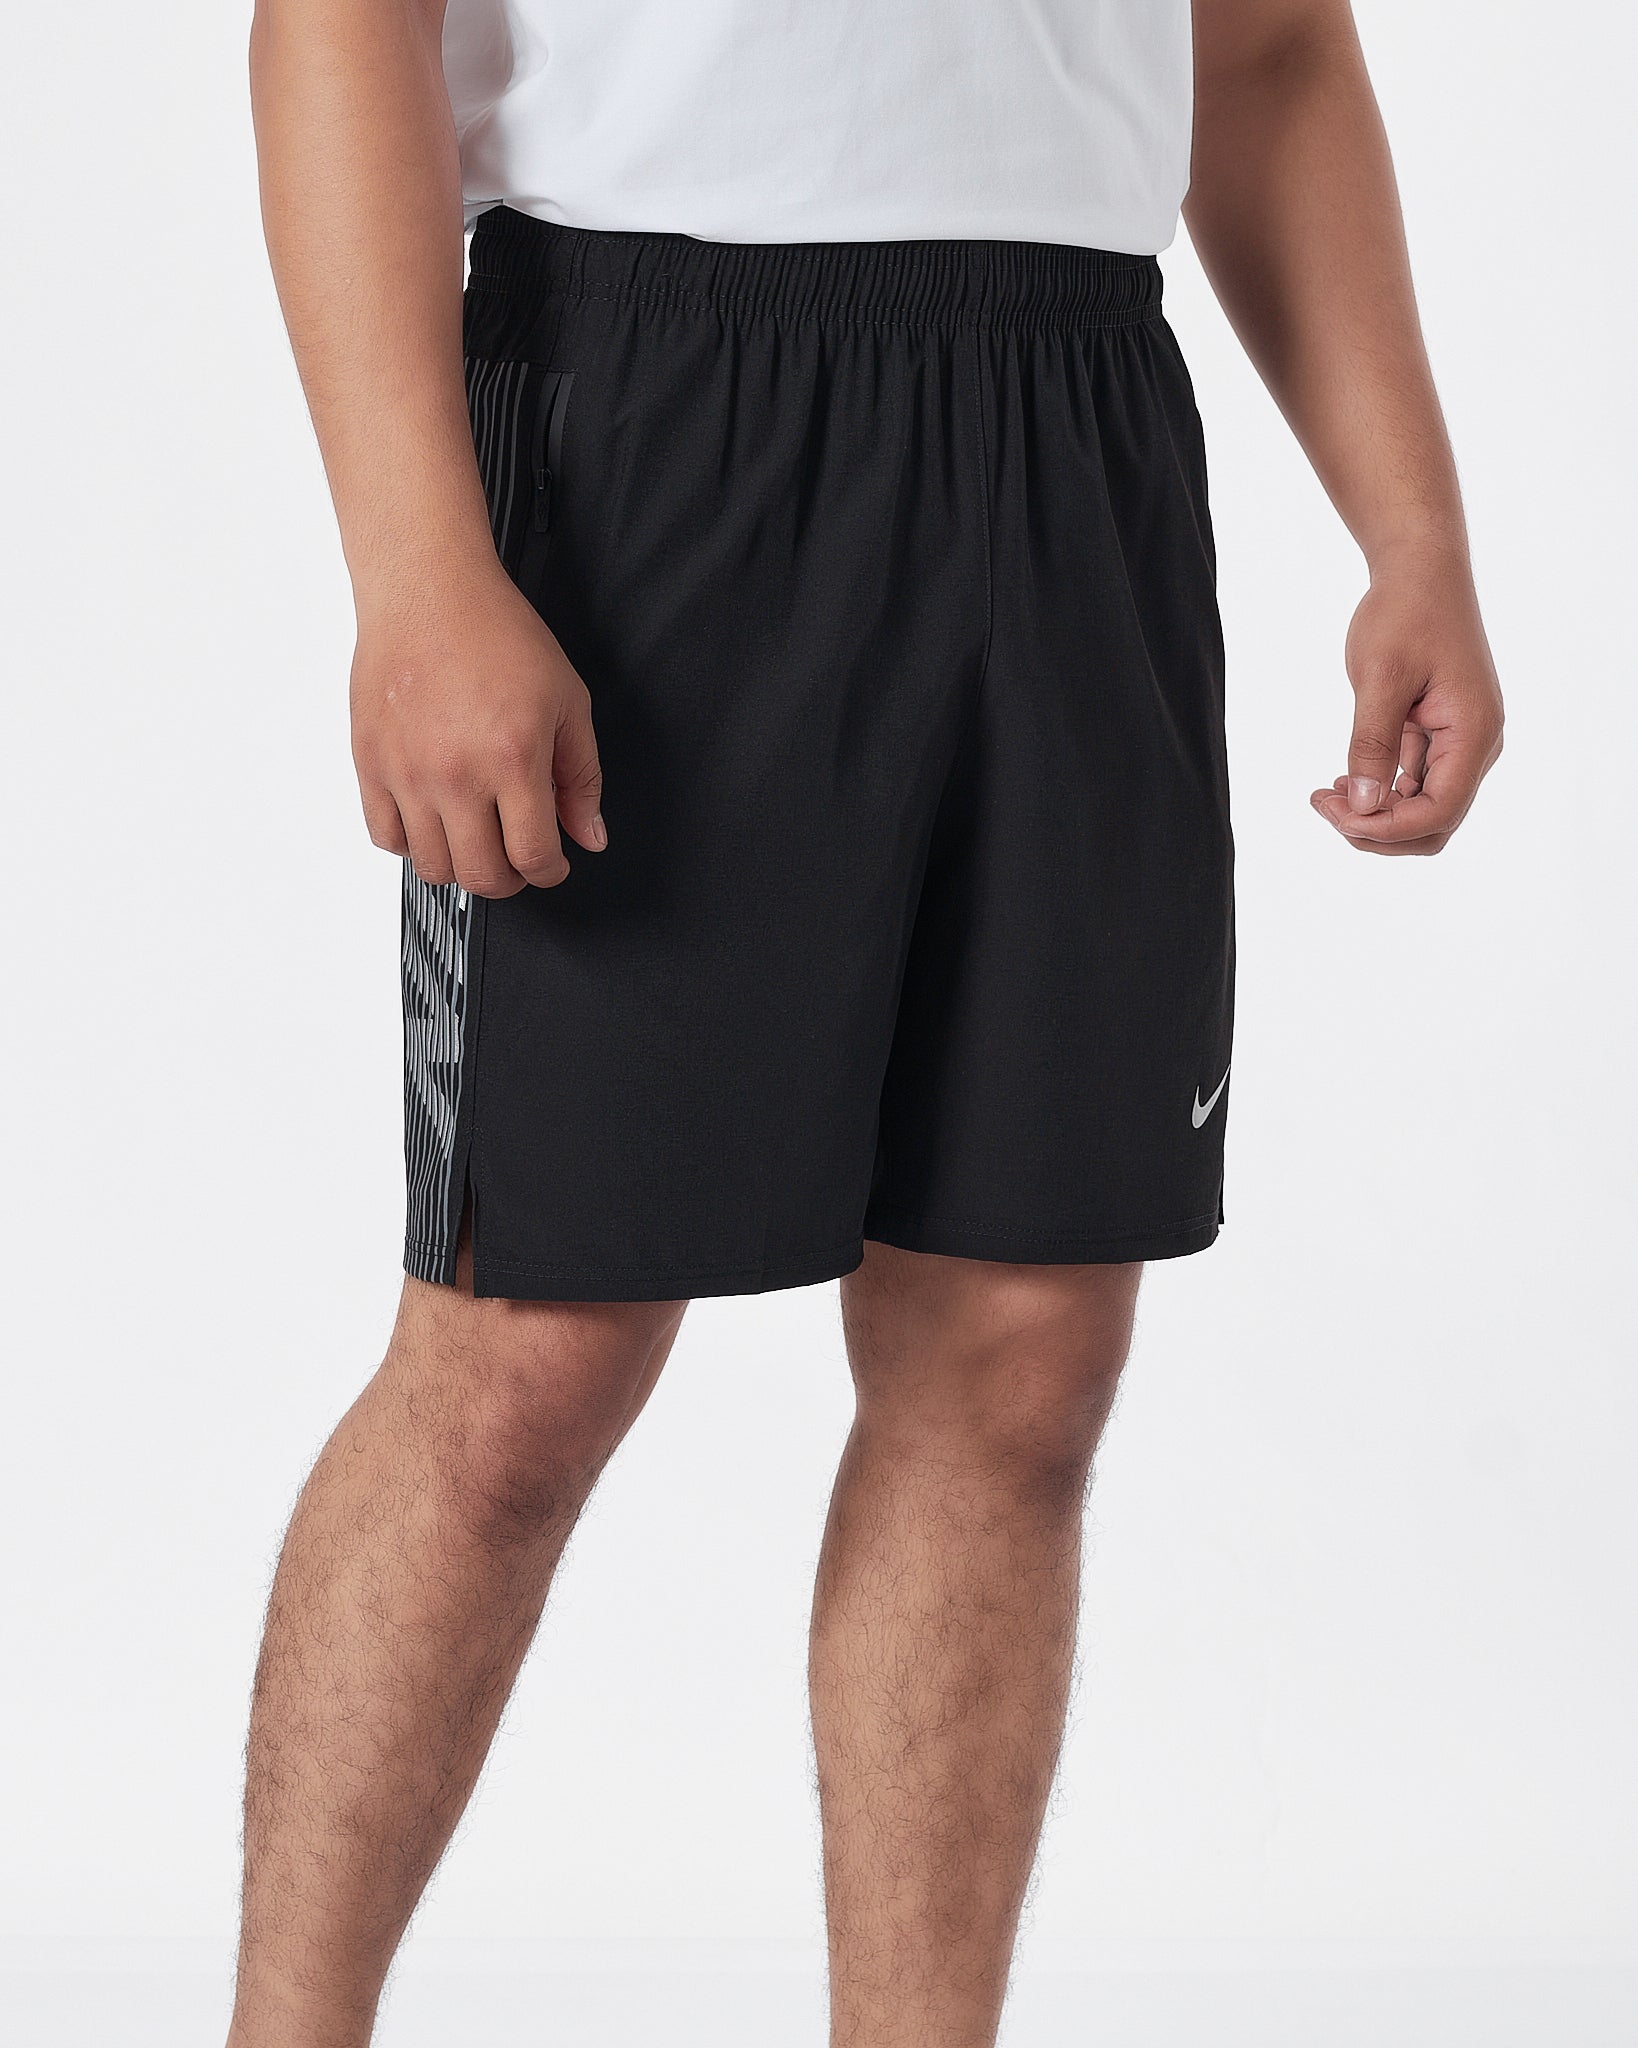 NIK Side Striped Logo Vertical Men Black Track Shorts 12.90